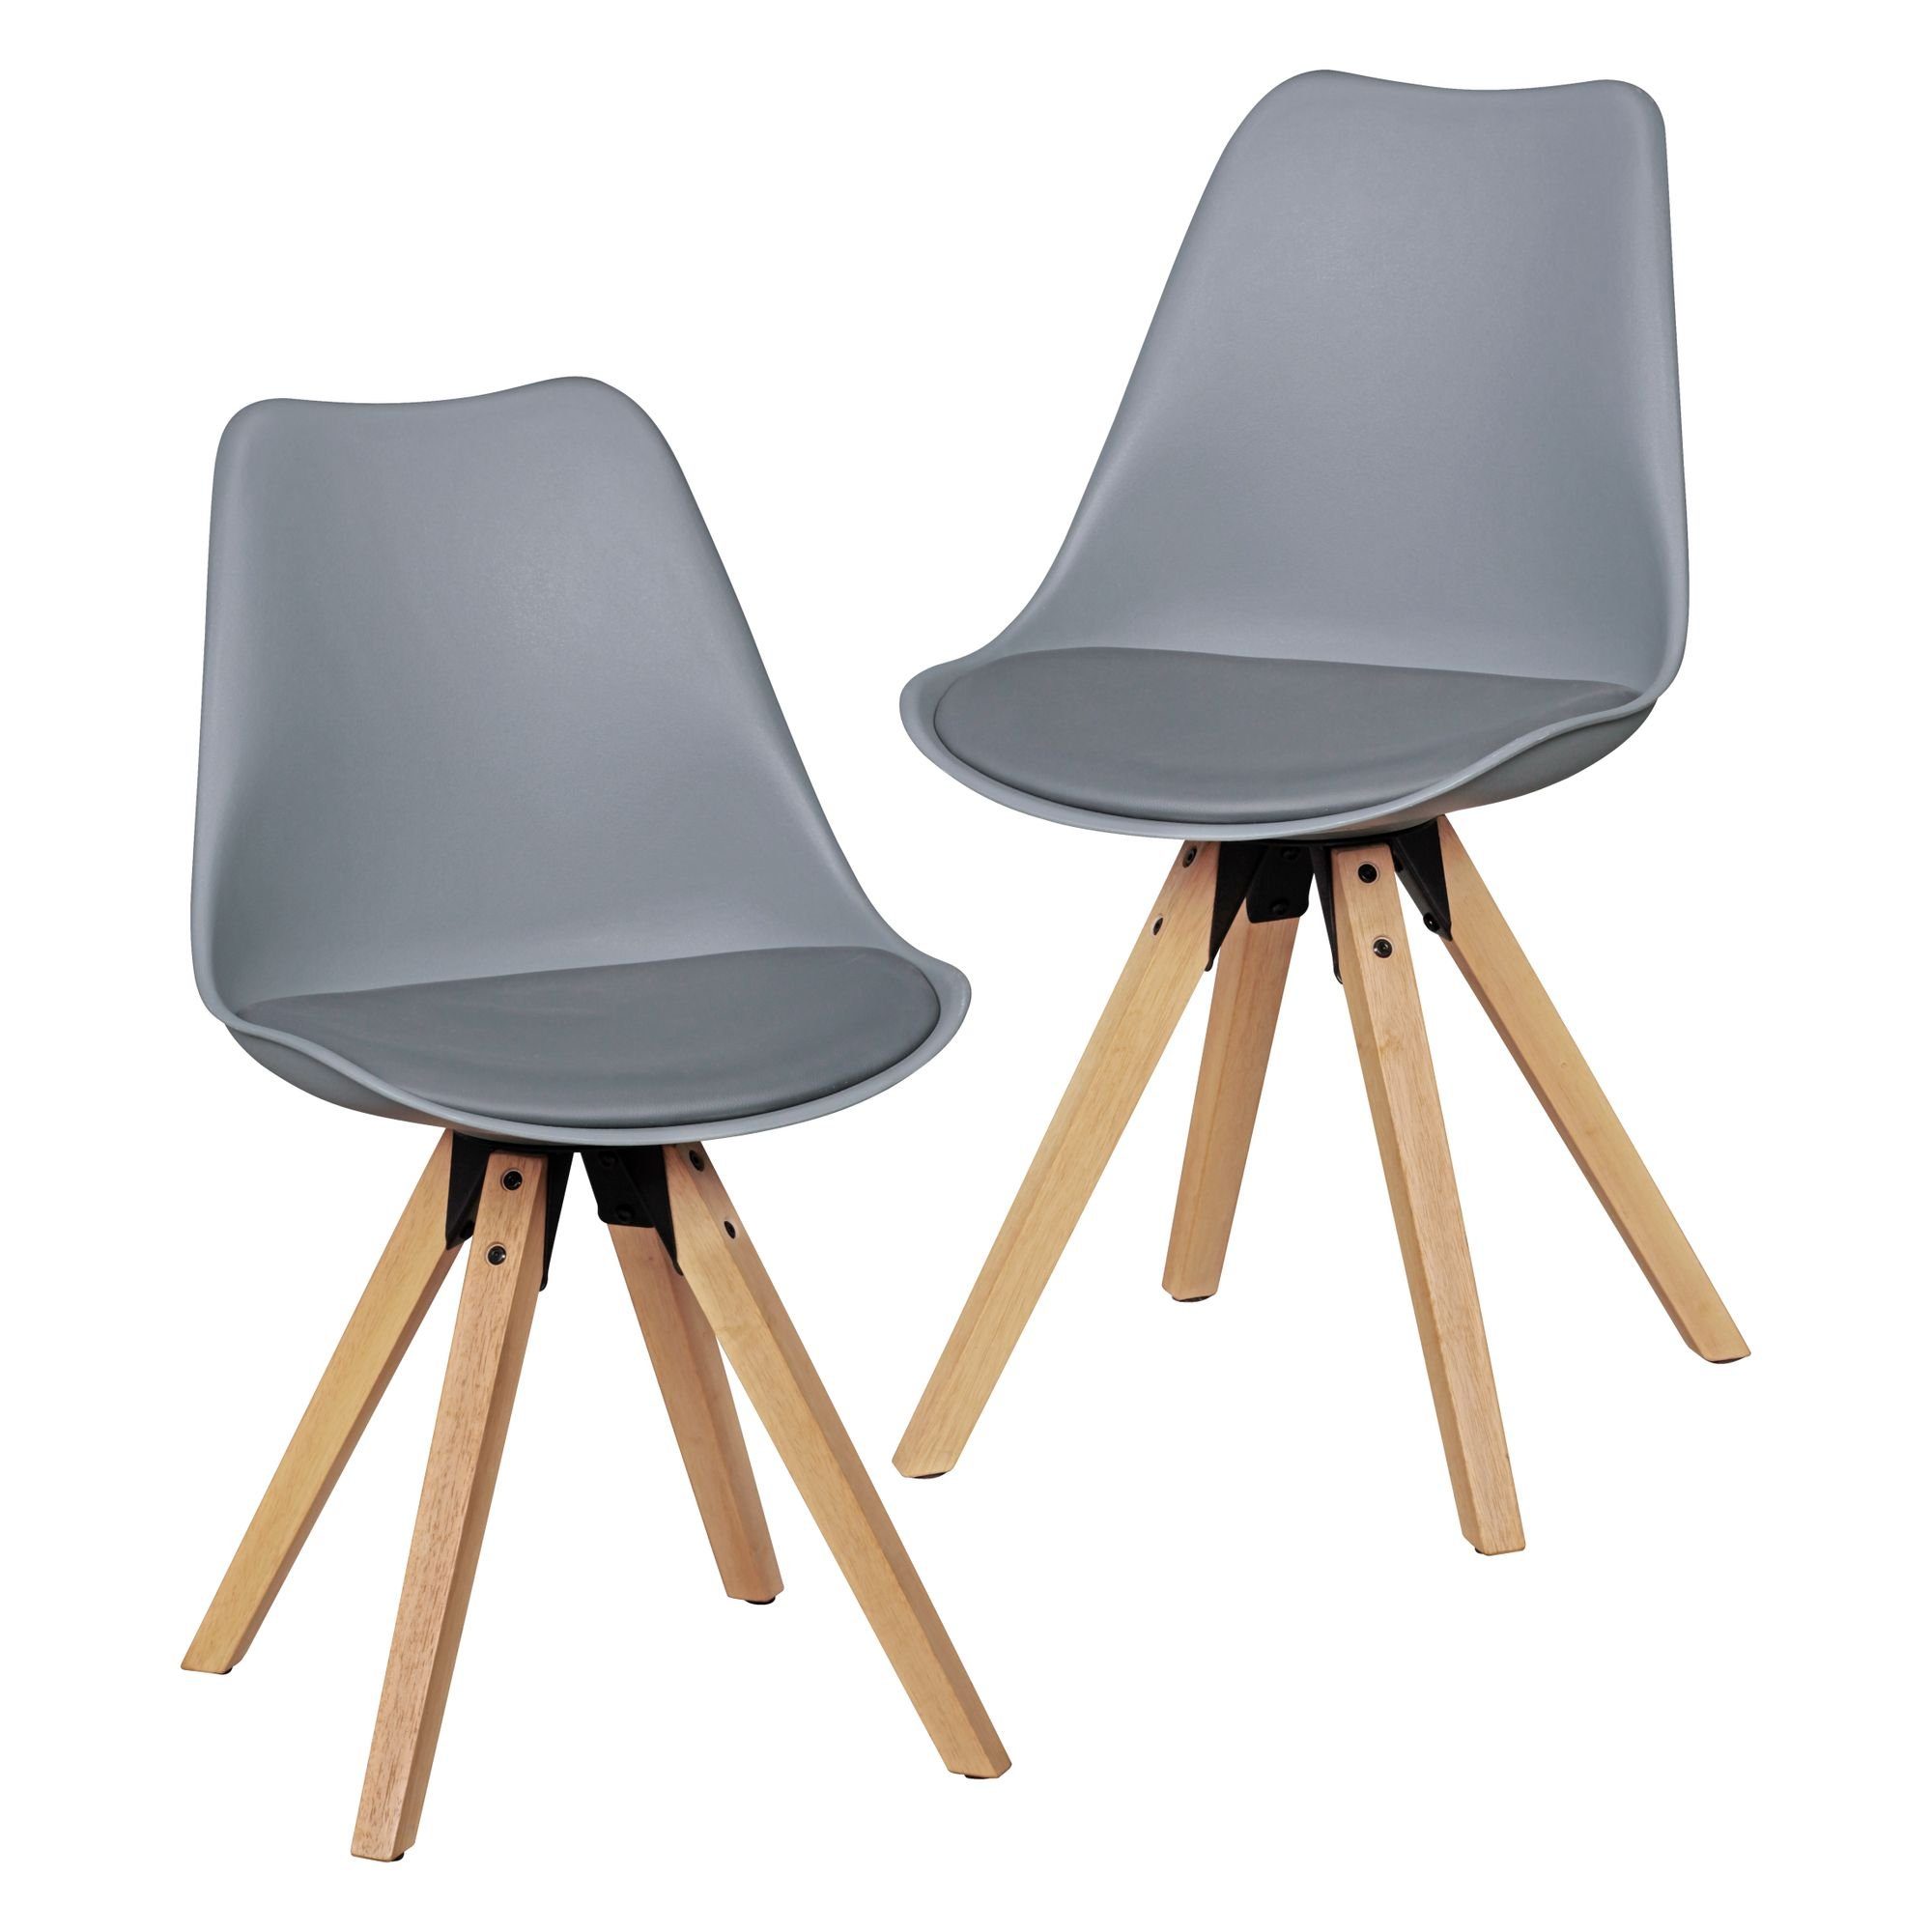 EGOONM 2er Set Esszimmerstühle Armlehne Retro Stuhl Holzbeinen Stuhl im nordischen Stil-Grau